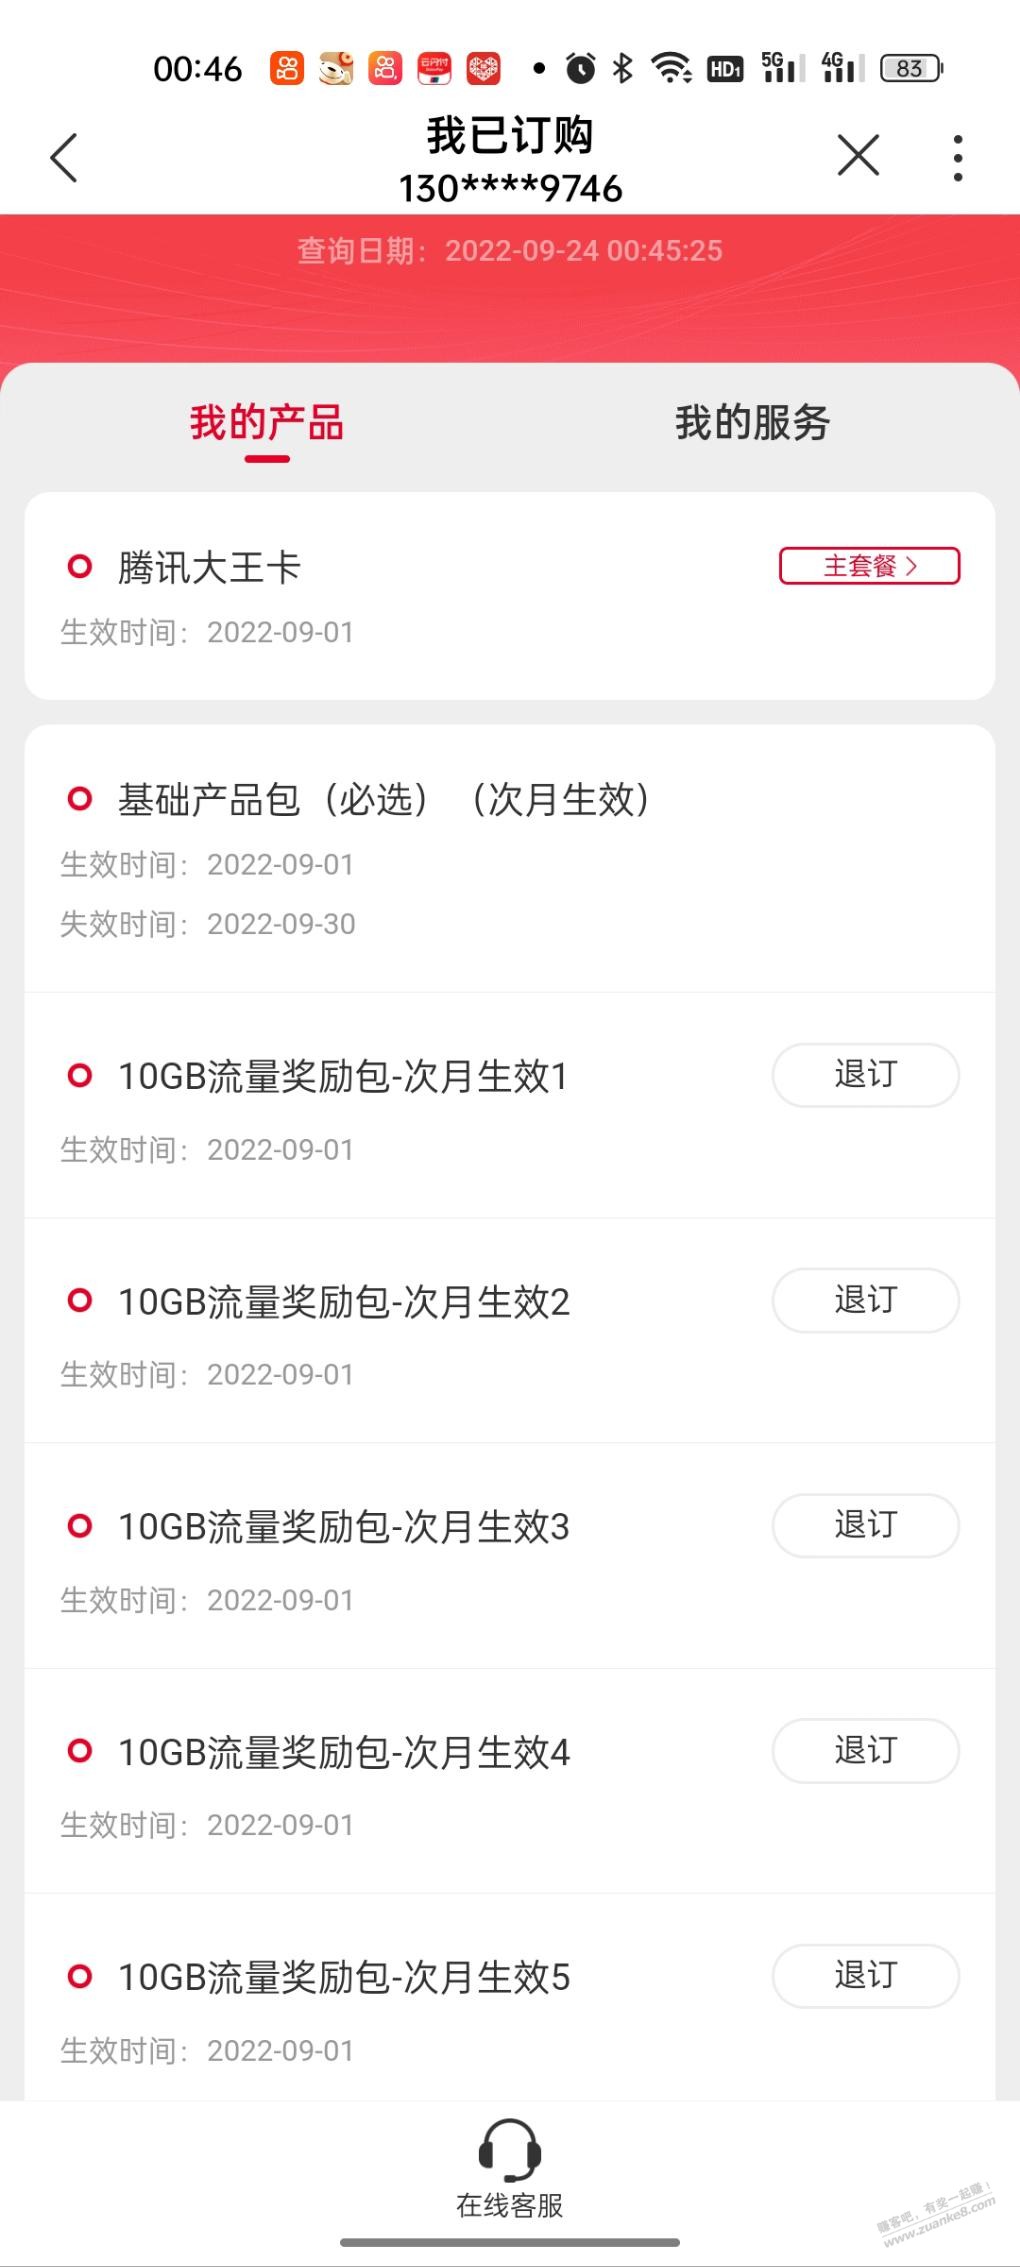 腾讯王卡基础业务包长沙显示取消，70G流量会不会一起取消了  第1张